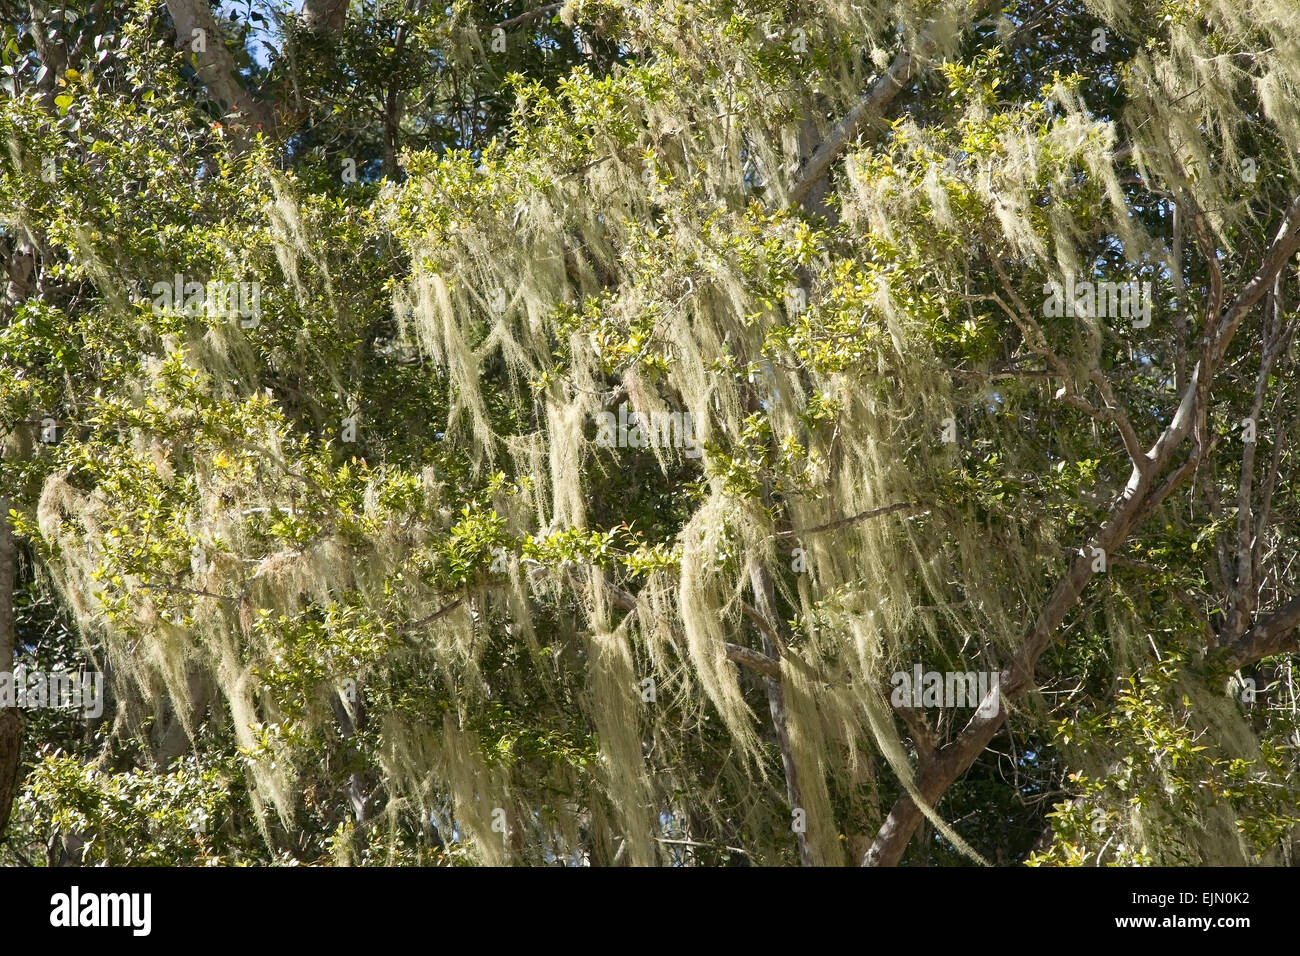 Tree's dandruff (Usnea) on a tree, Tsitsikamma National Park, South Africa Stock Photo